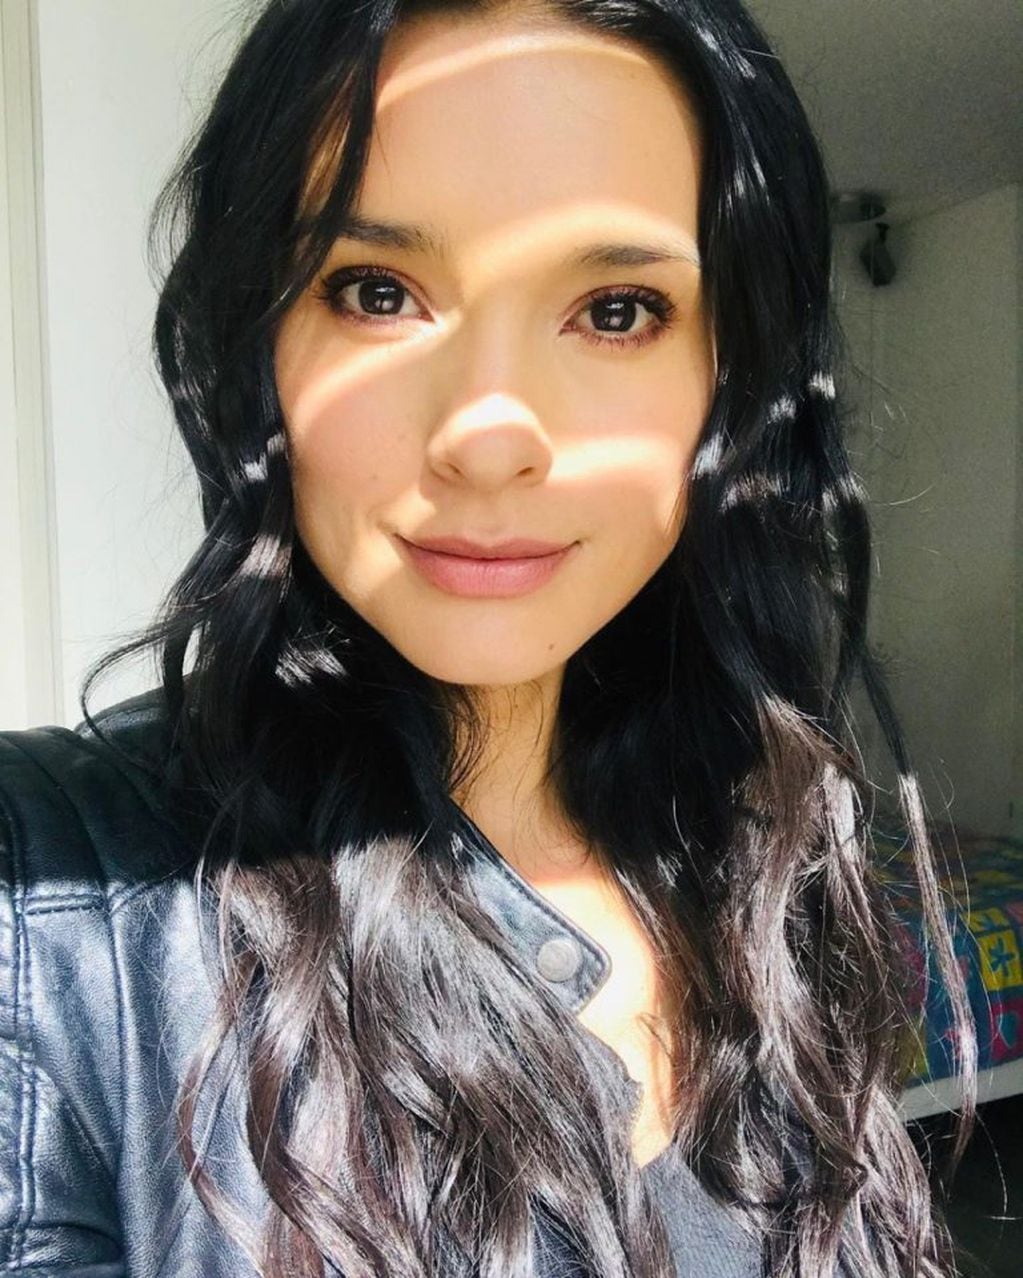 Paola Rey, la actriz de "Pasión de Gavilanes", a través de su cuenta de Instagram.